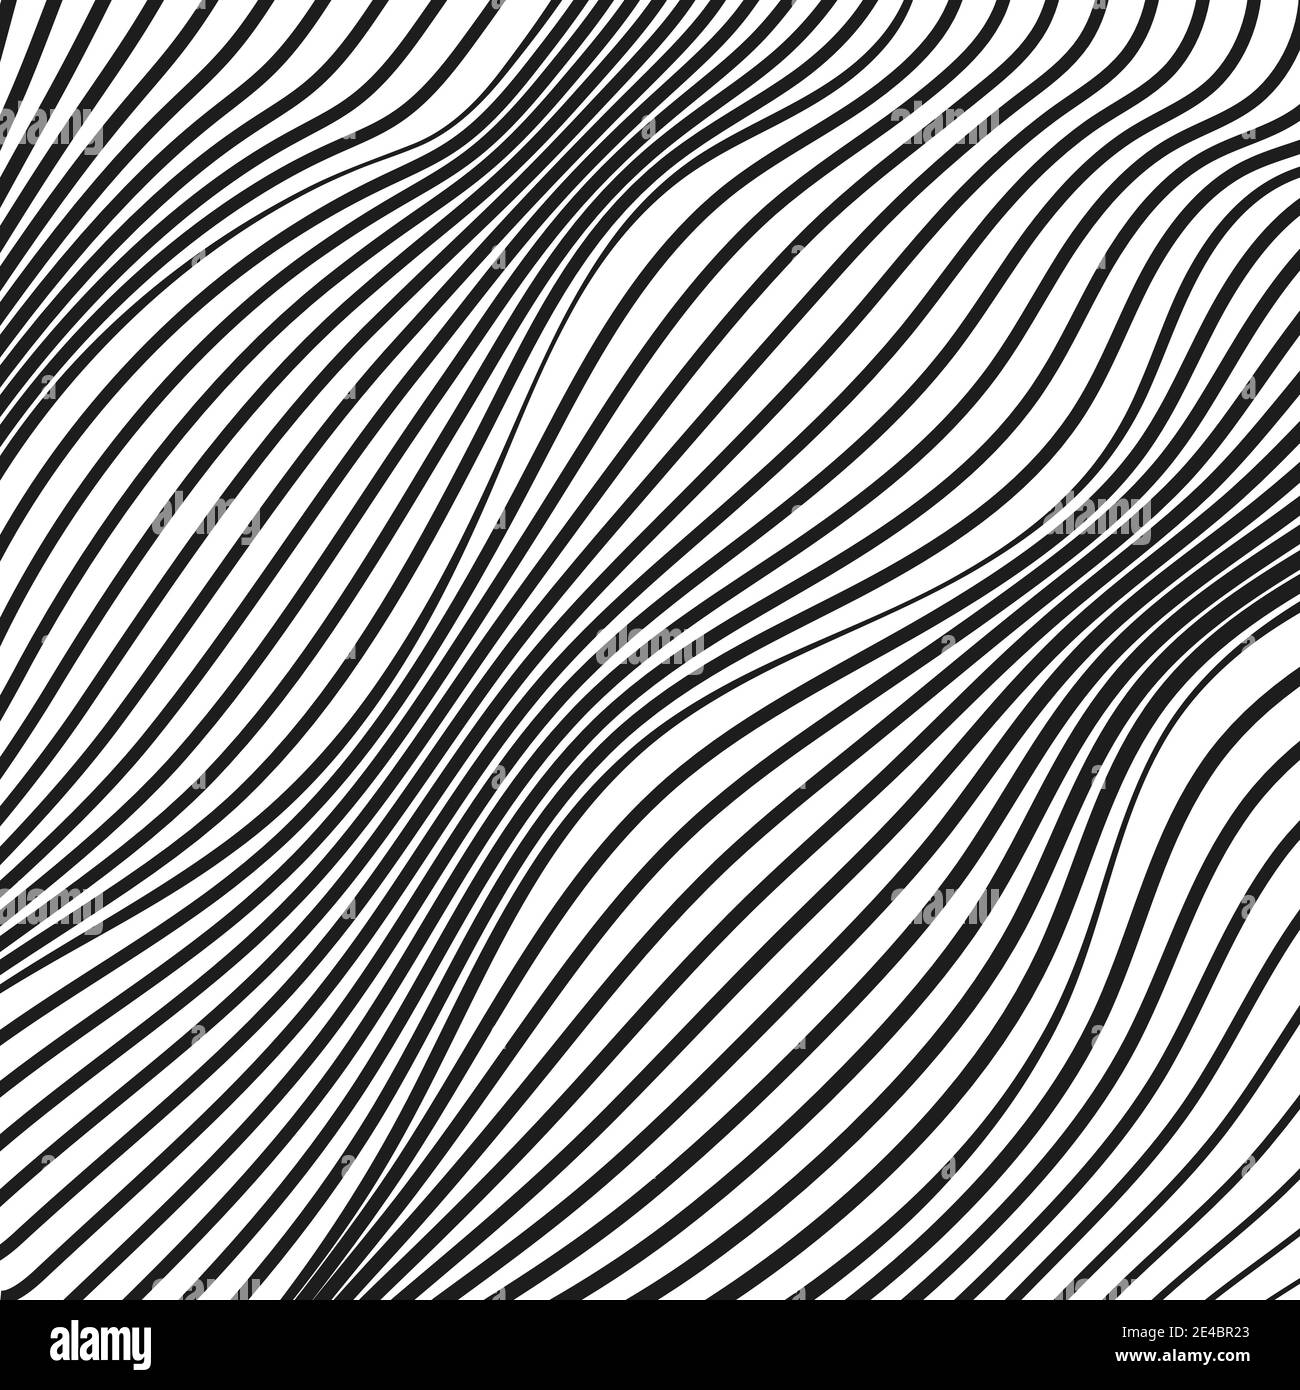 Líneas diagonales abstractas. Patrón de arte op. Superficie deformada de rayas negras y blancas. Curvas onduladas y agitadas. Diseño tecnológico. Concepto moderno. EPS10 Ilustración del Vector